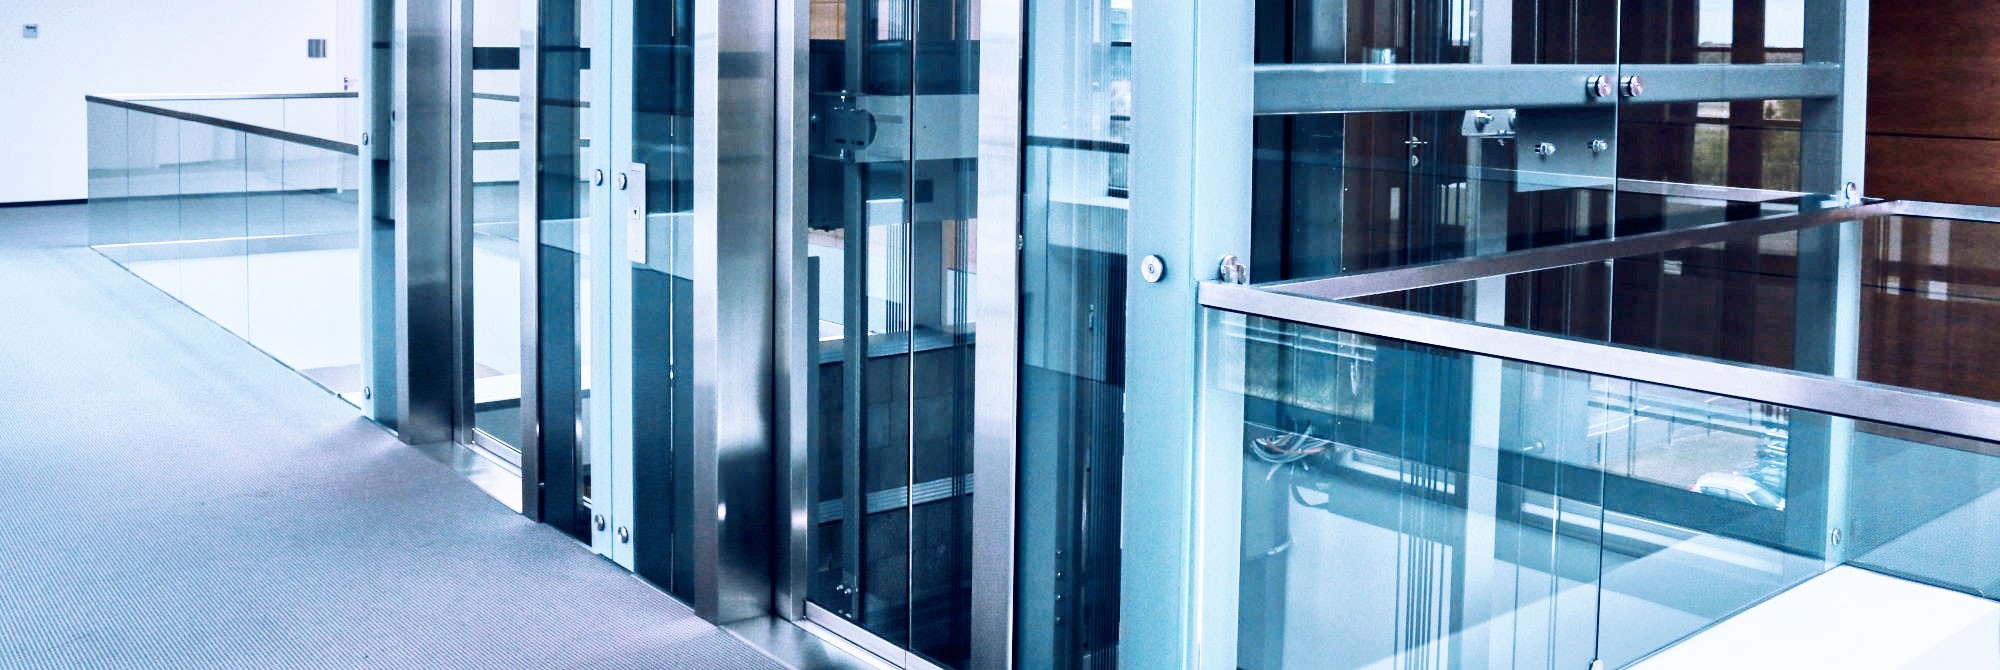 Ascenseurs - thyssenkrupp Elevator UK